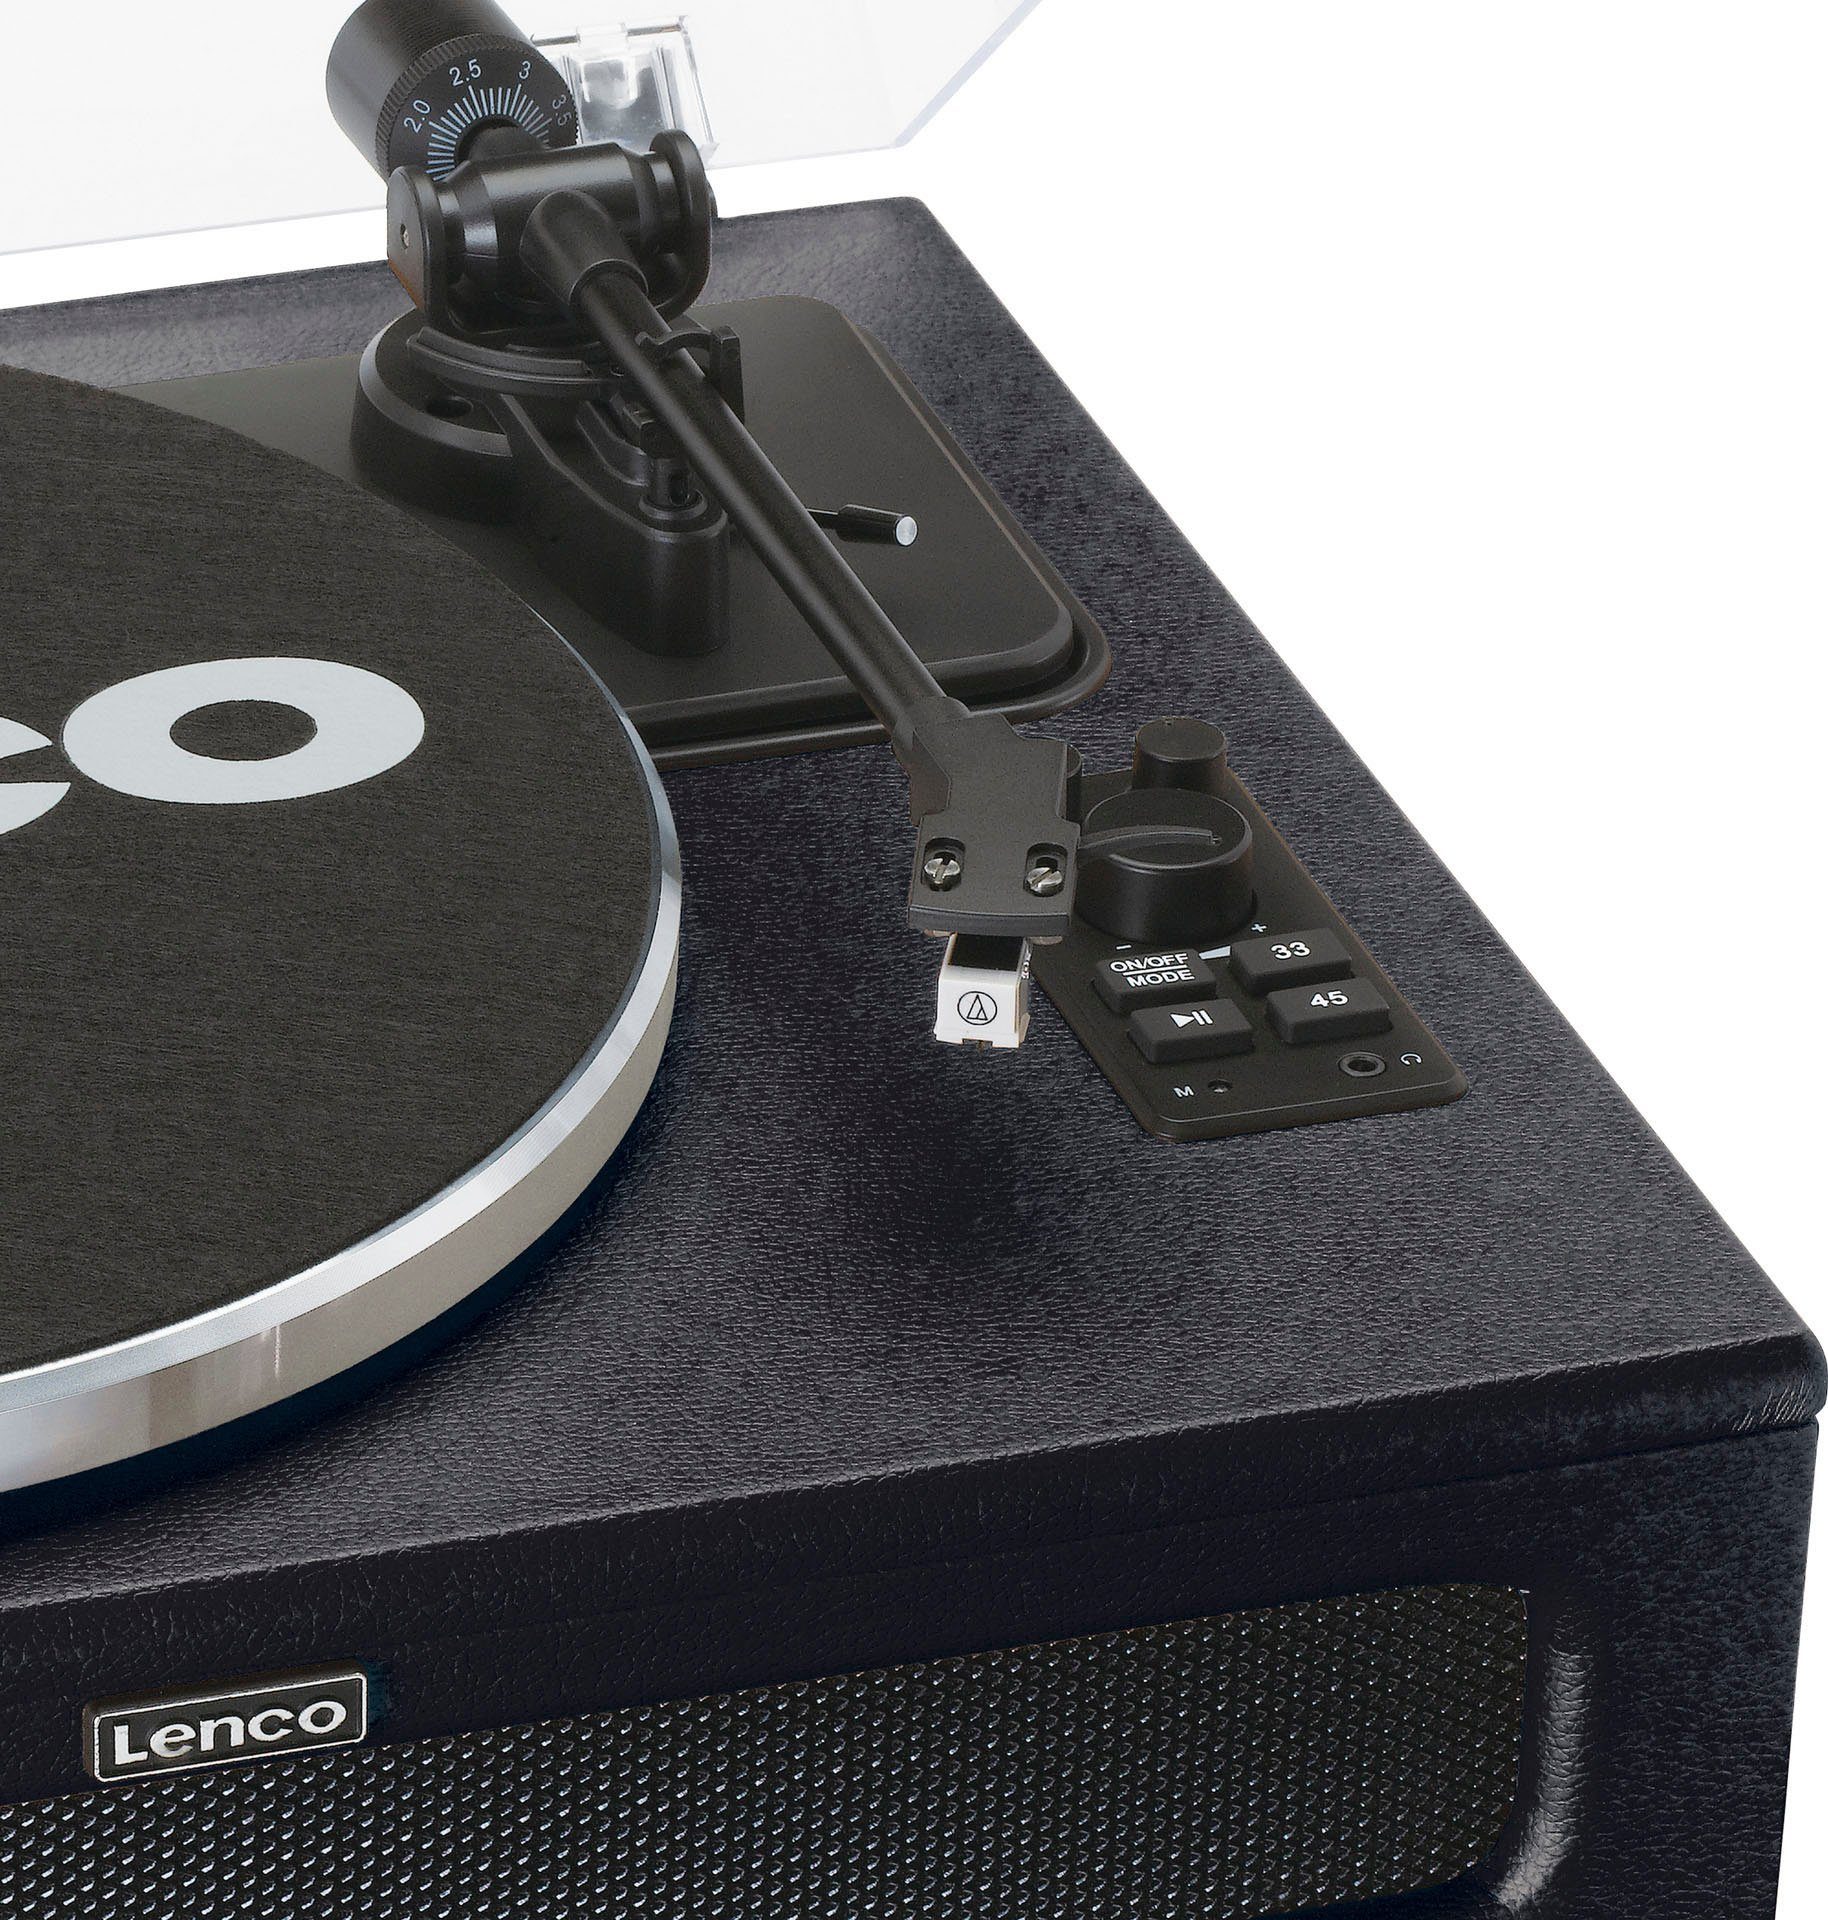 Plattenspieler Plattenspieler 4 mit schwarz LS-430 Lautsprechern (Riemenantrieb) Lenco